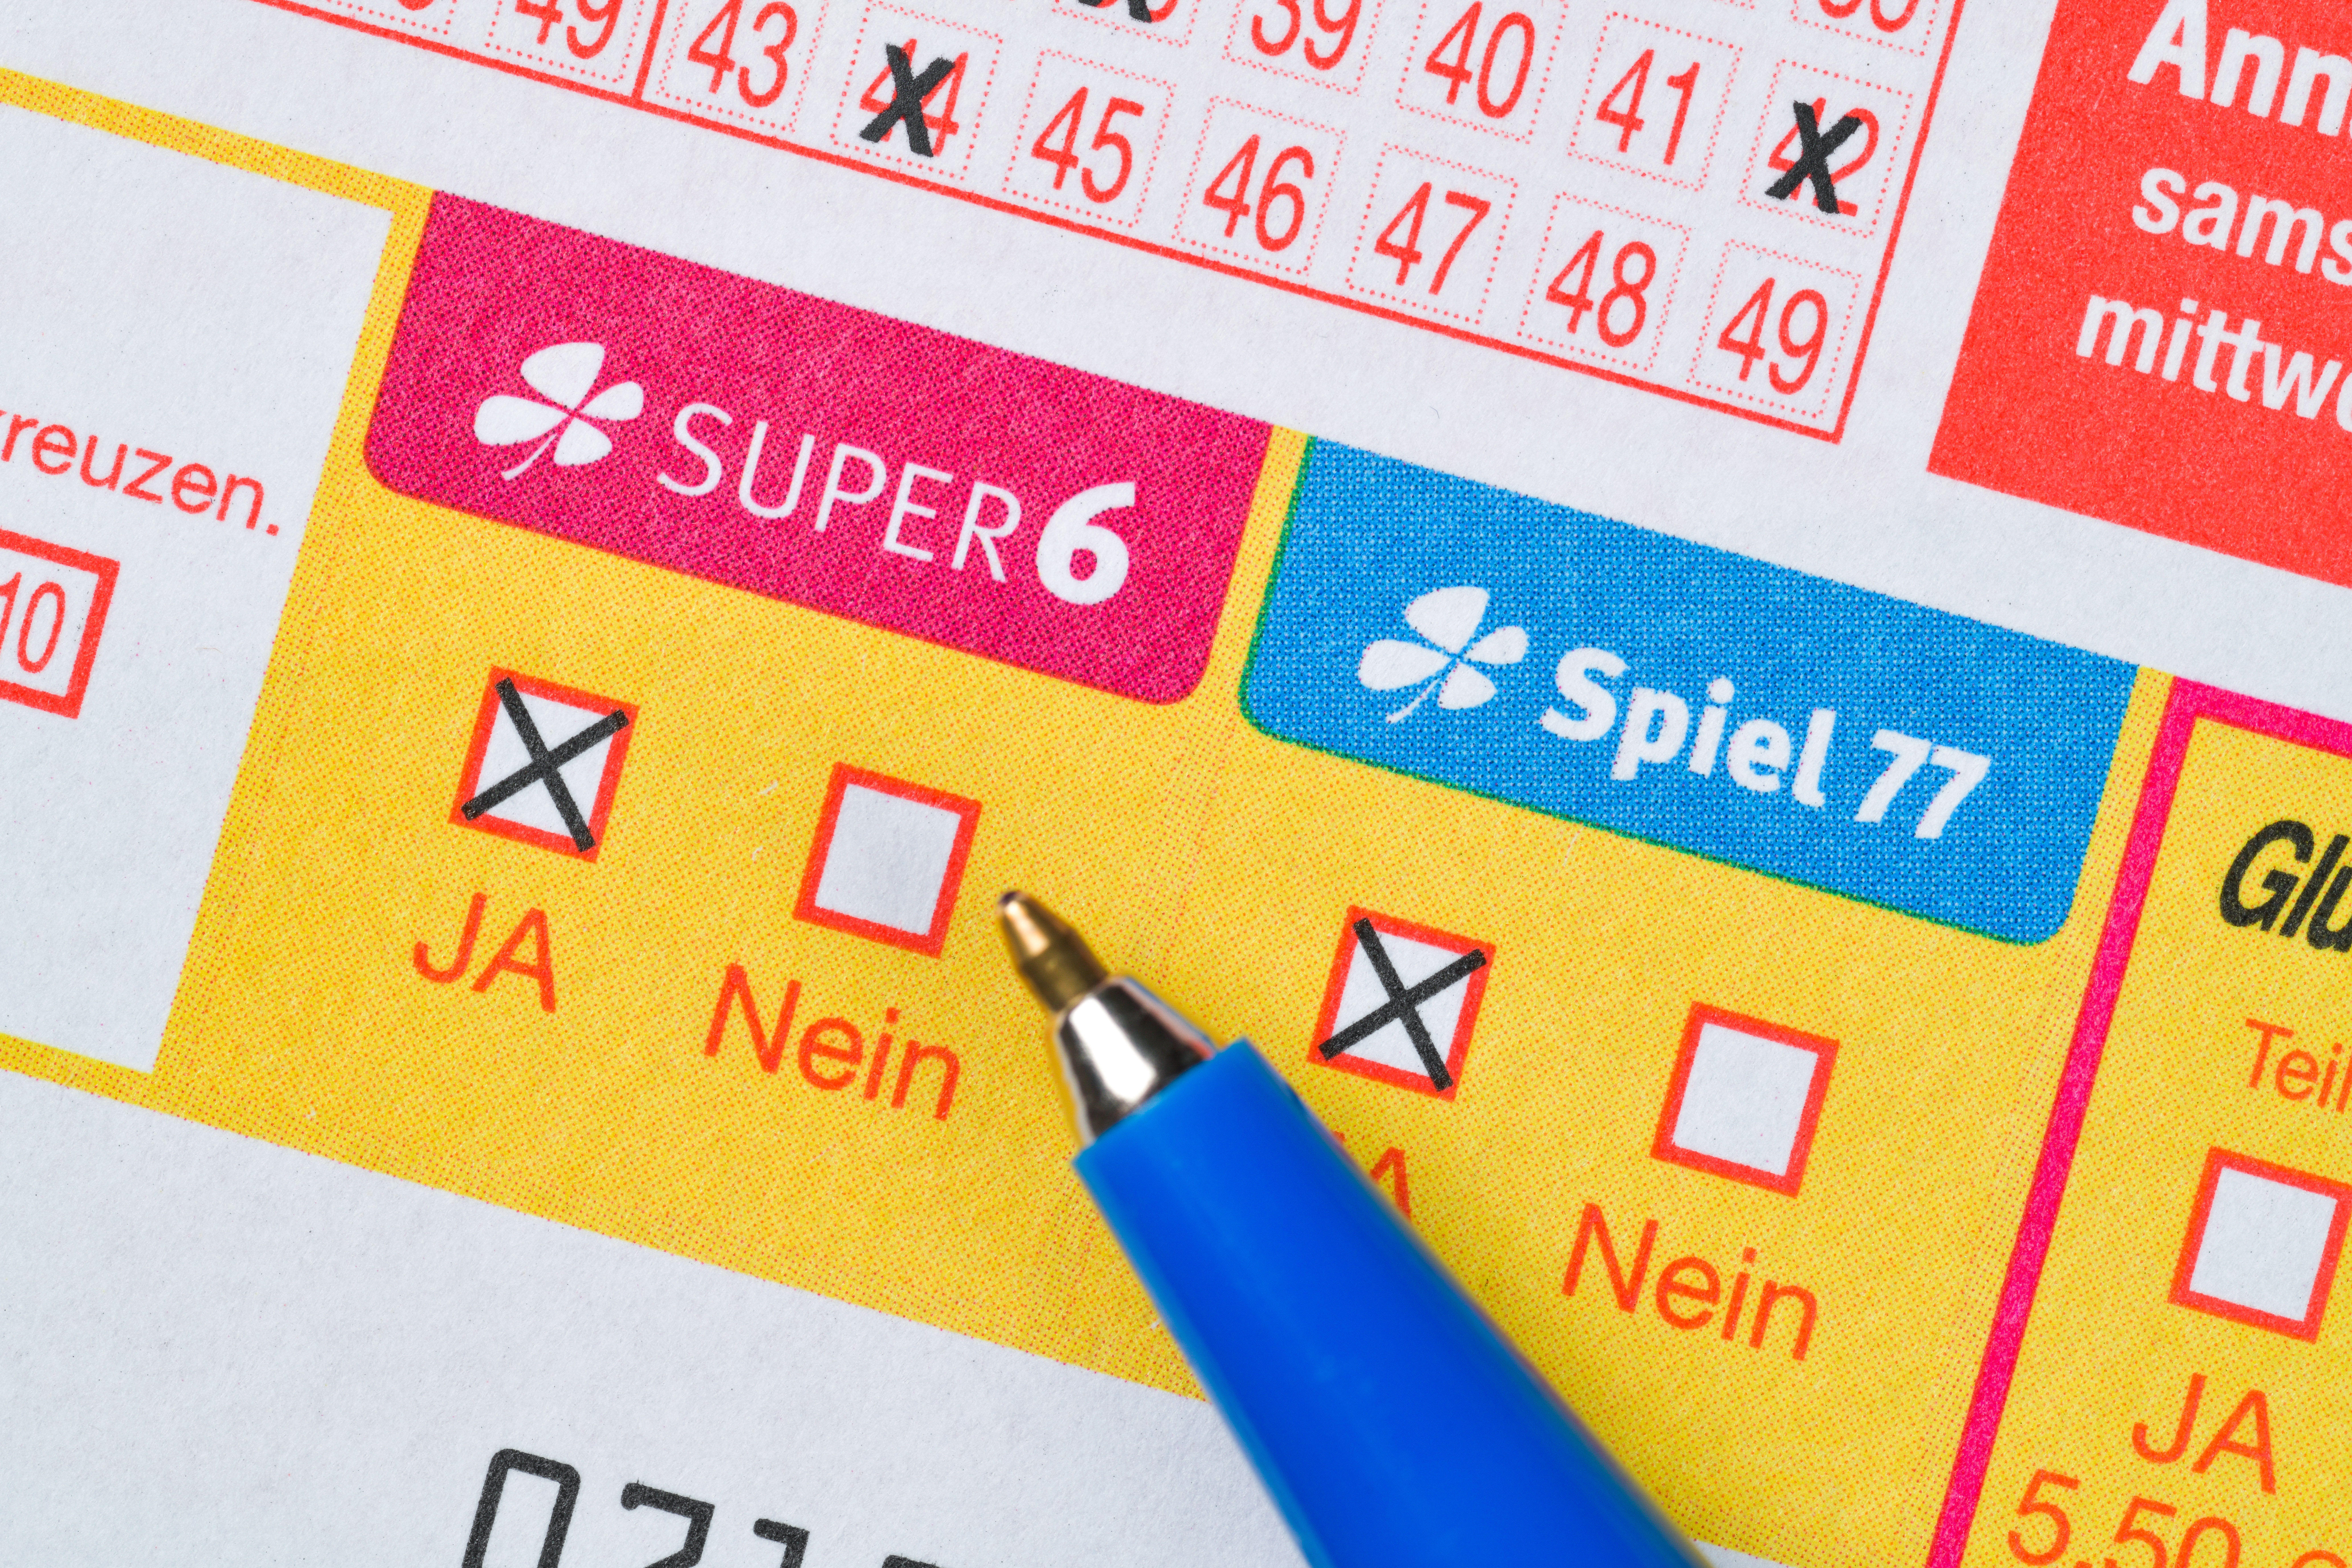 Ein Lottospieler aus Wandsbek kann sich über einen Gewinn von mehr als 2 Millionen Euro freuen. (Symbolbild)